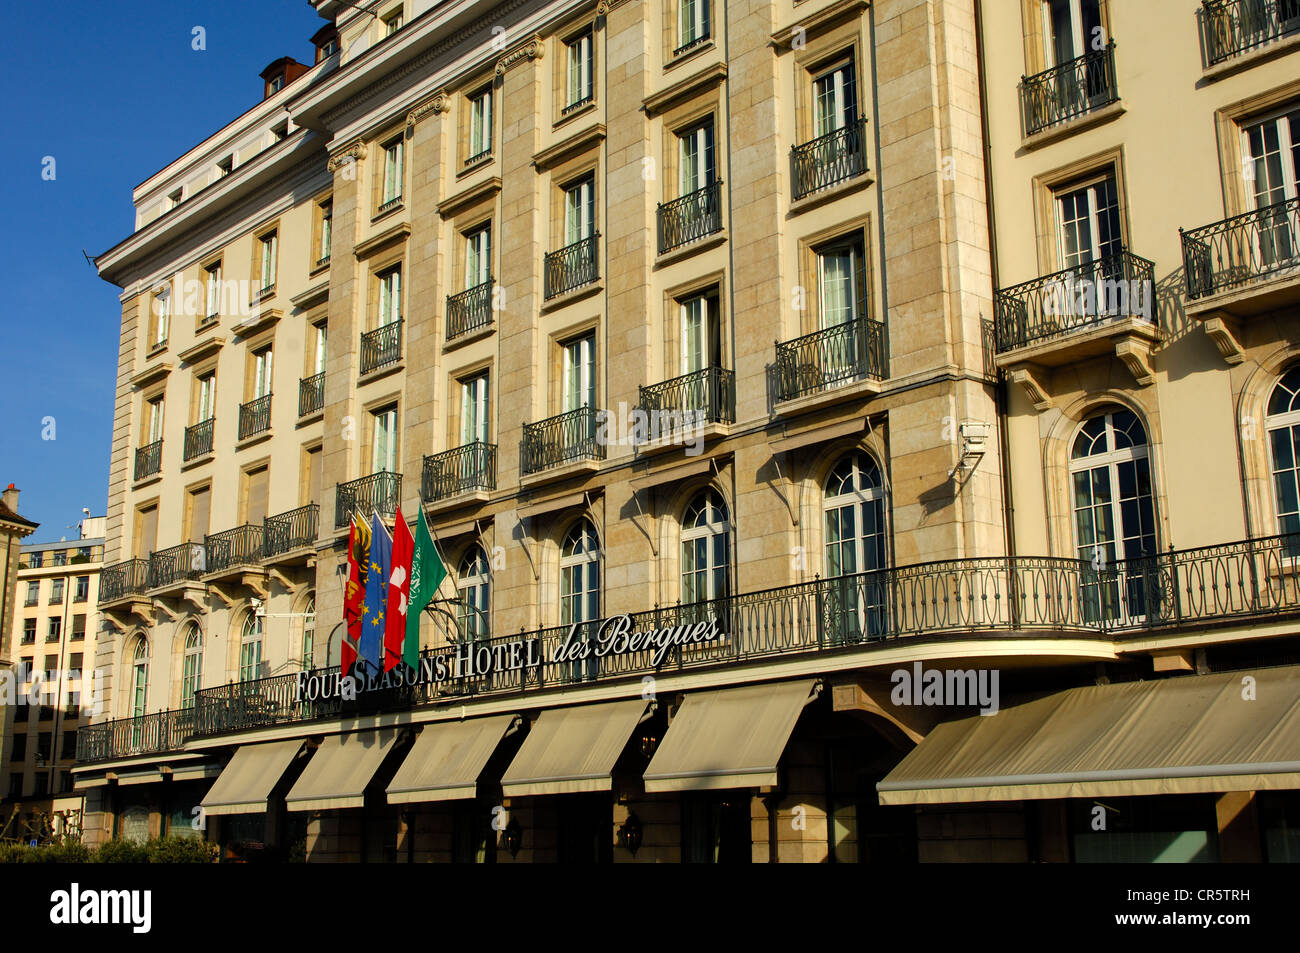 Vier Jahreszeiten Hotel des Bergues, Genf, Schweiz, Europa Stockfoto